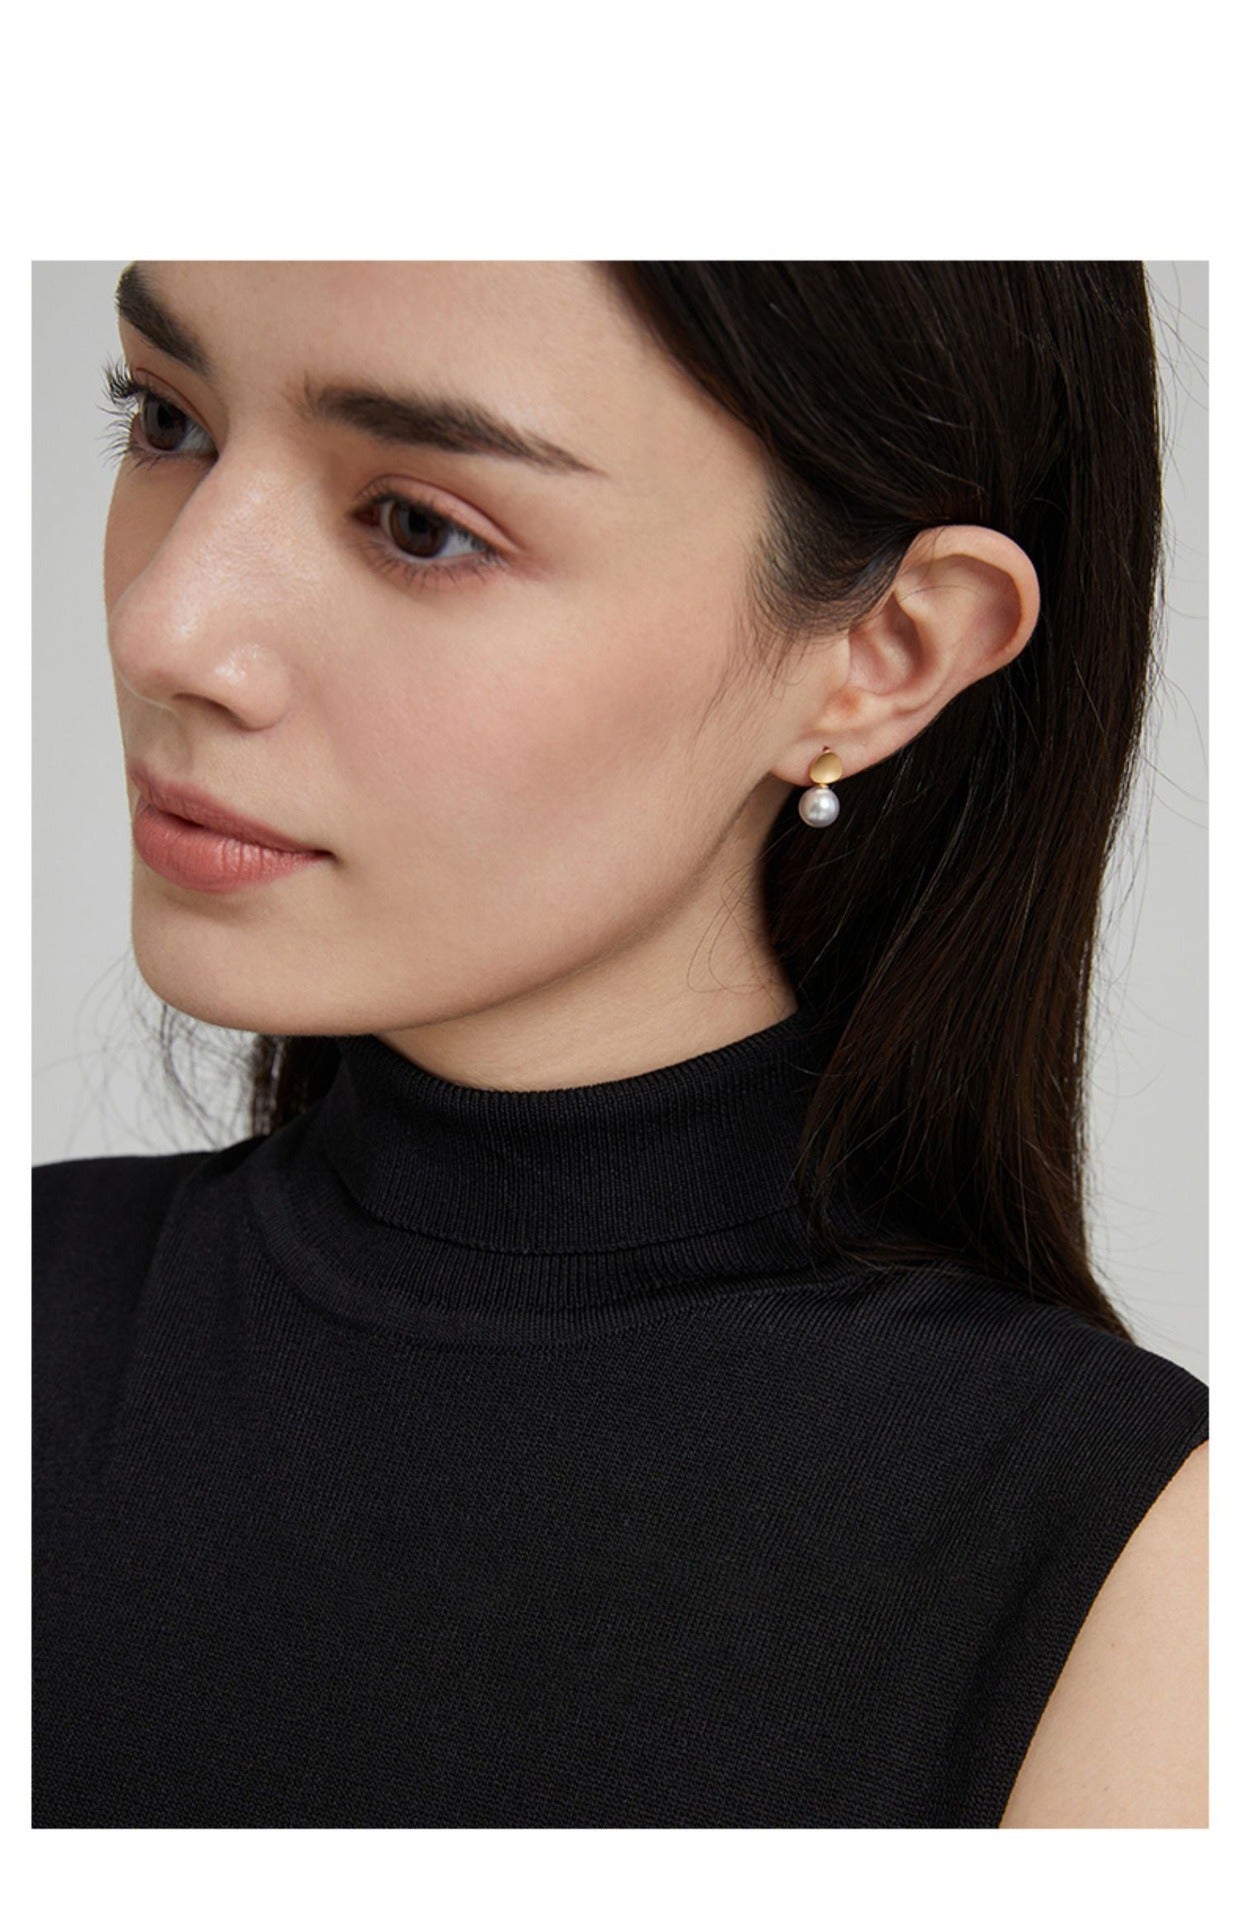 Japan Hemp Akoya Pearl in 18K Gold Earrings